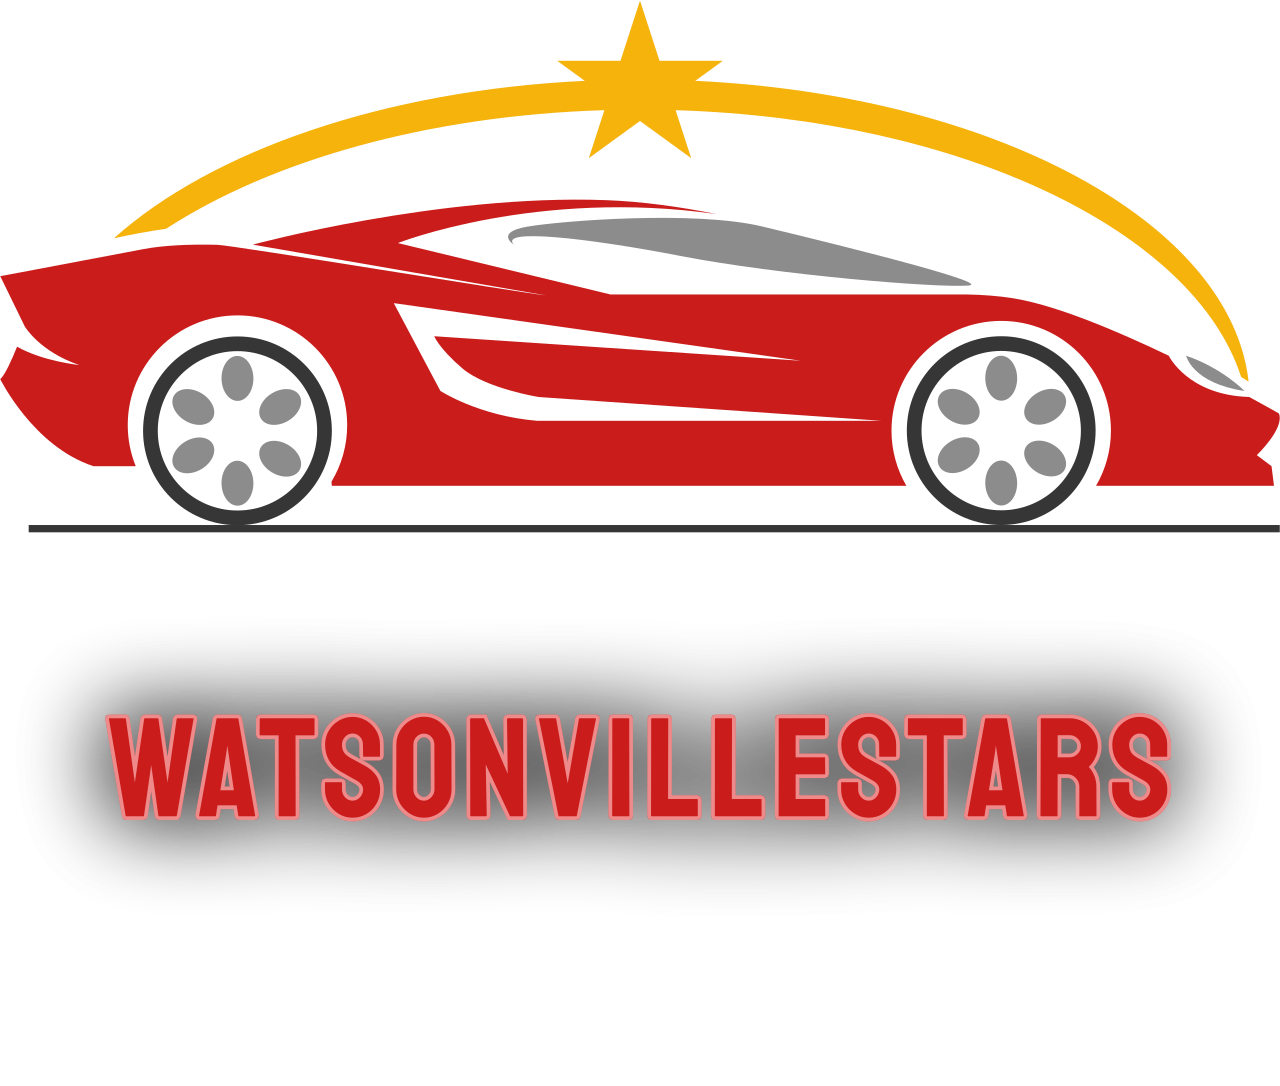 Watsonvillestars's web page